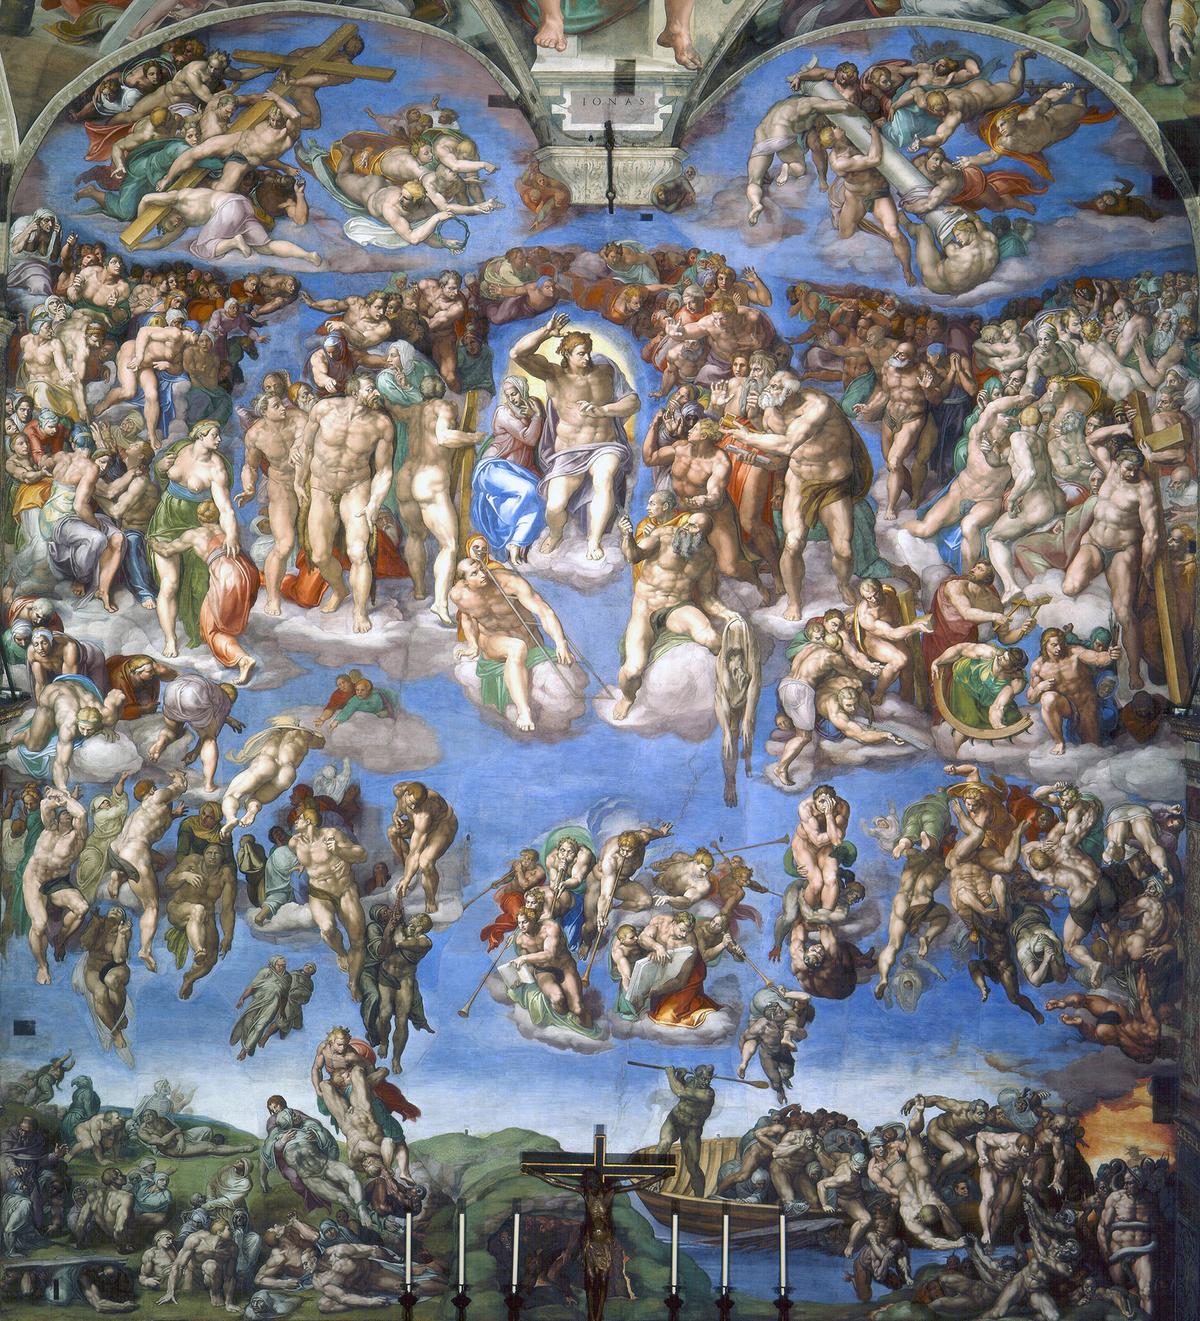 "The Last Judgment," 1536-1541, by Michelangelo. Sistine Chapel, Vatican City. (Public Domain)